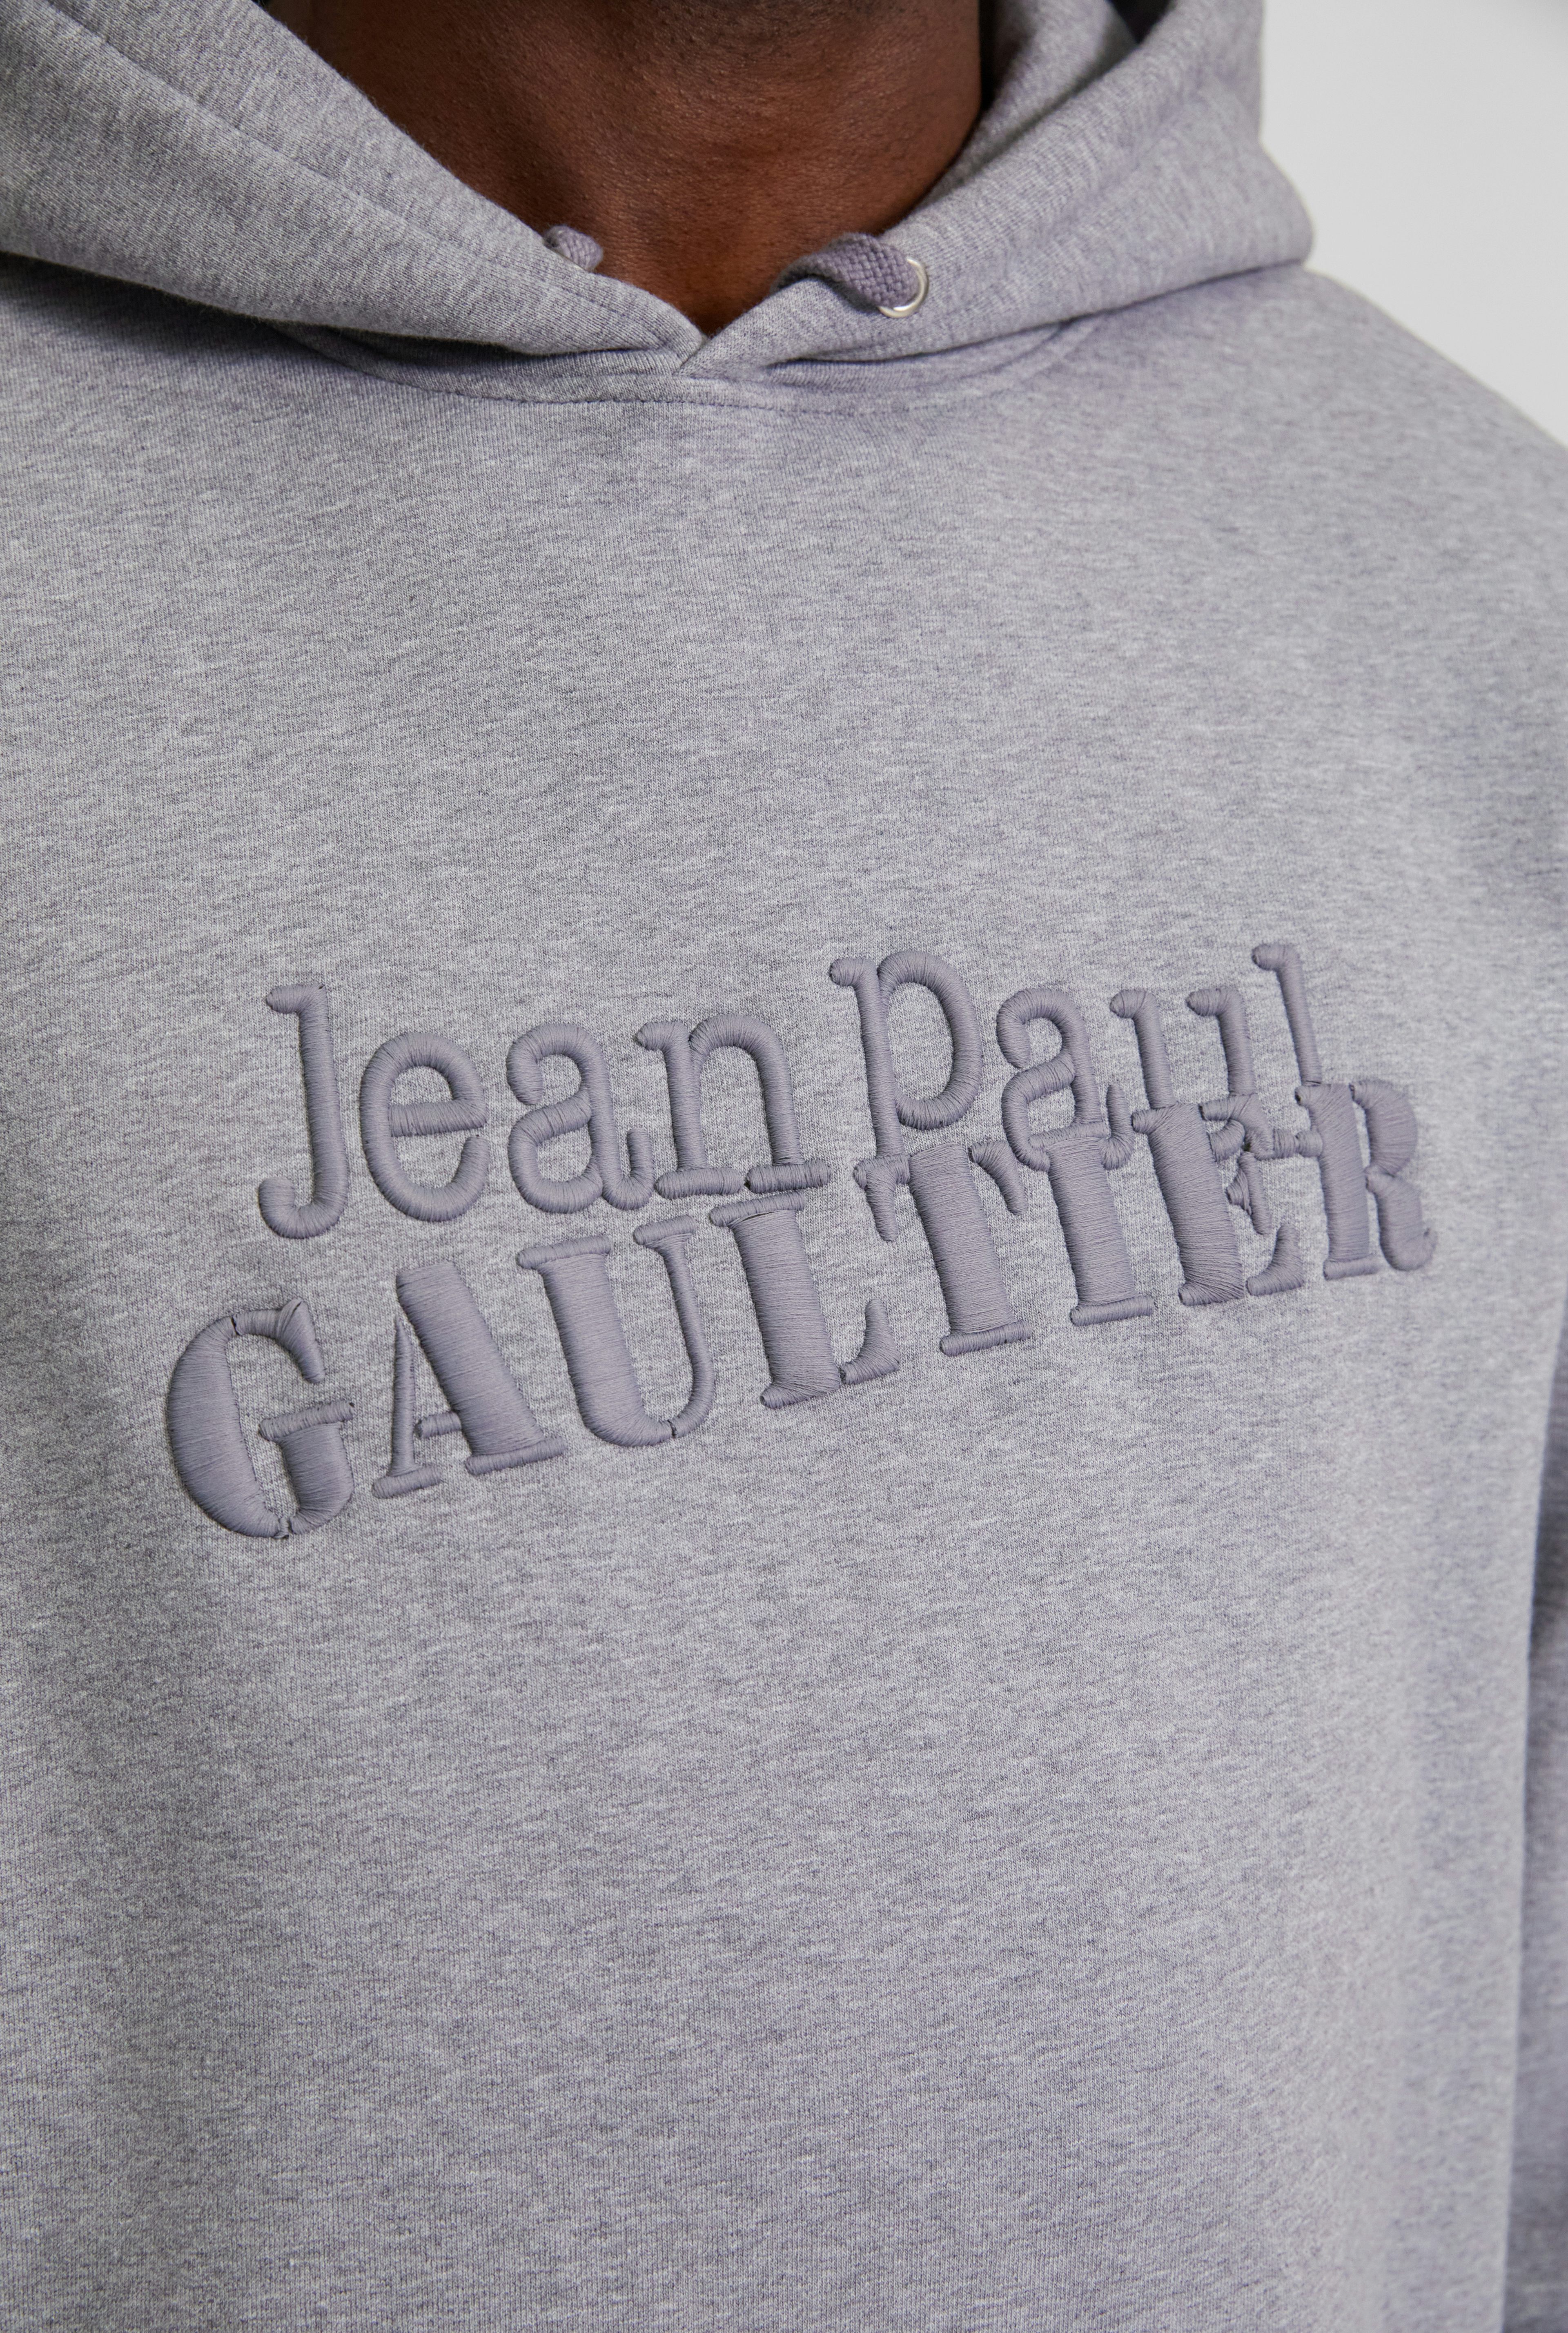 The Jean Paul Gaultier Hoodie